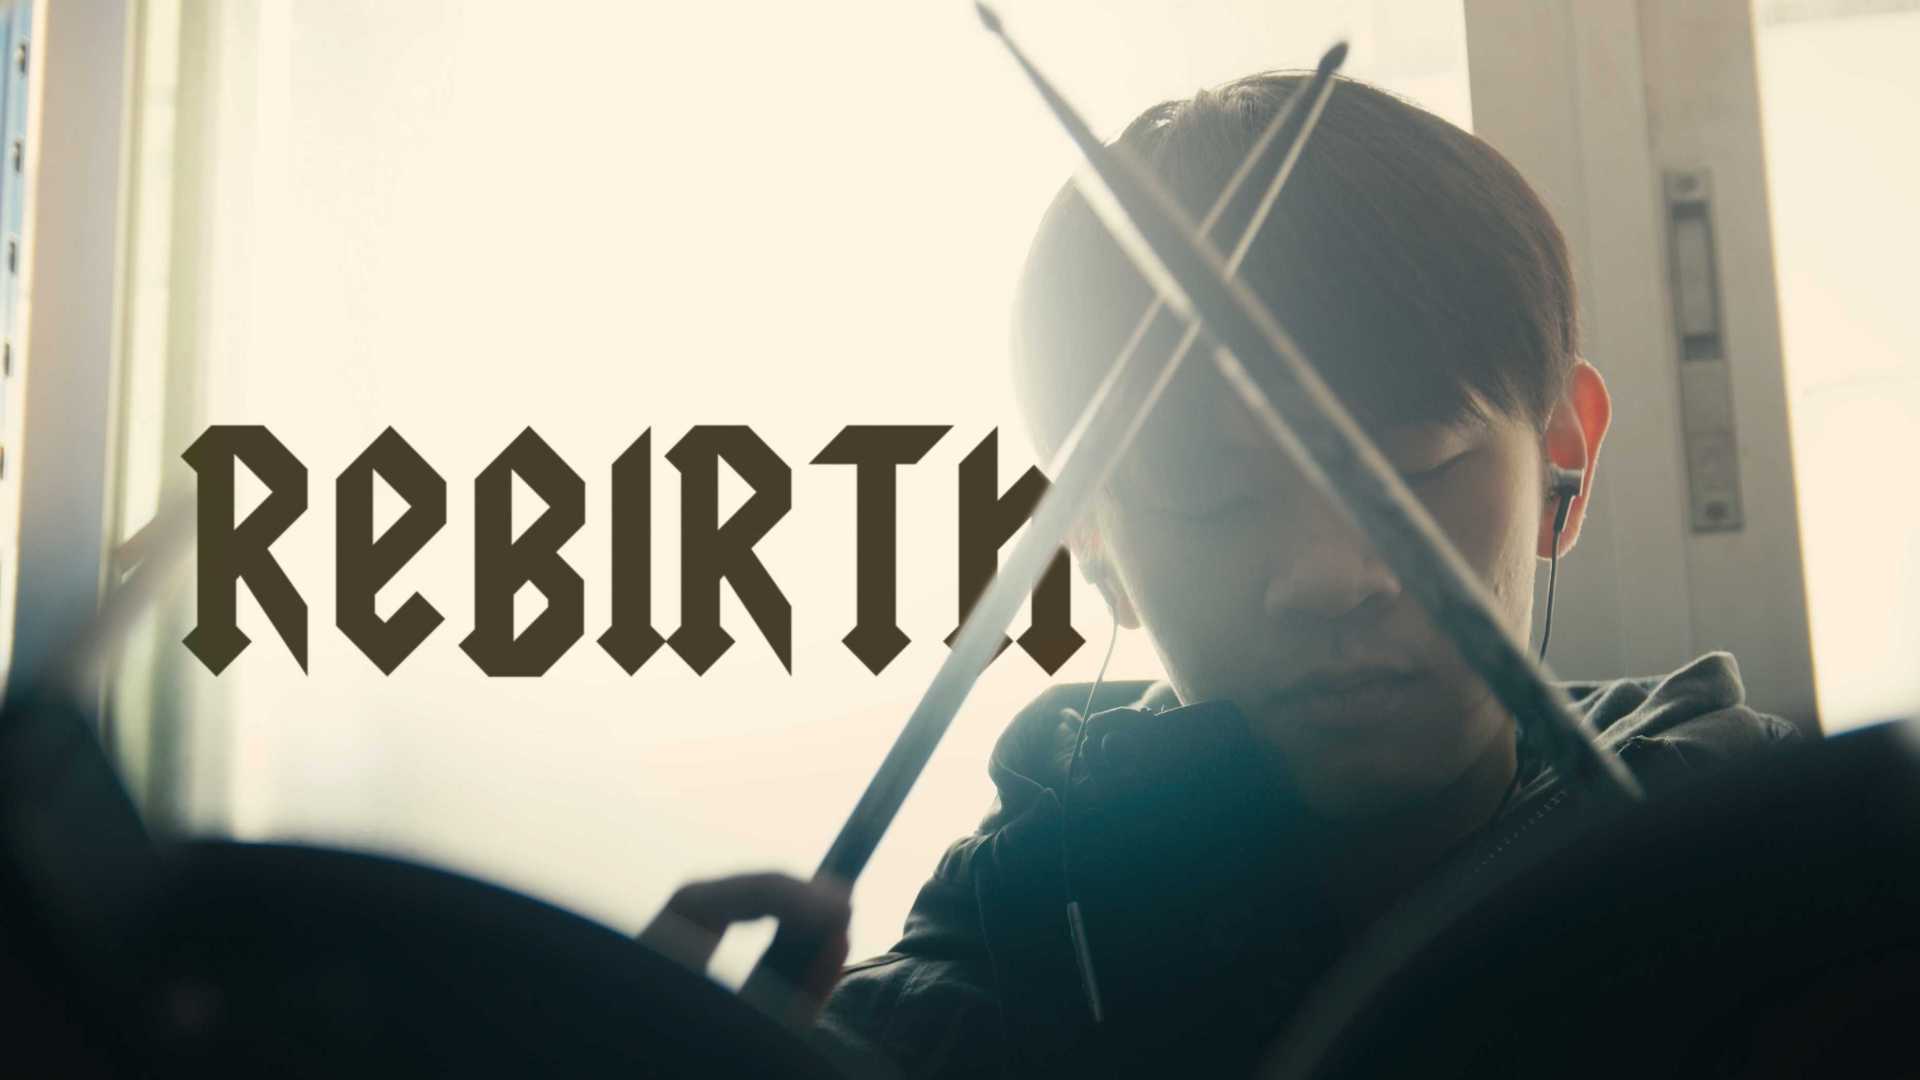 毕设短片《Rebirth : 重生》